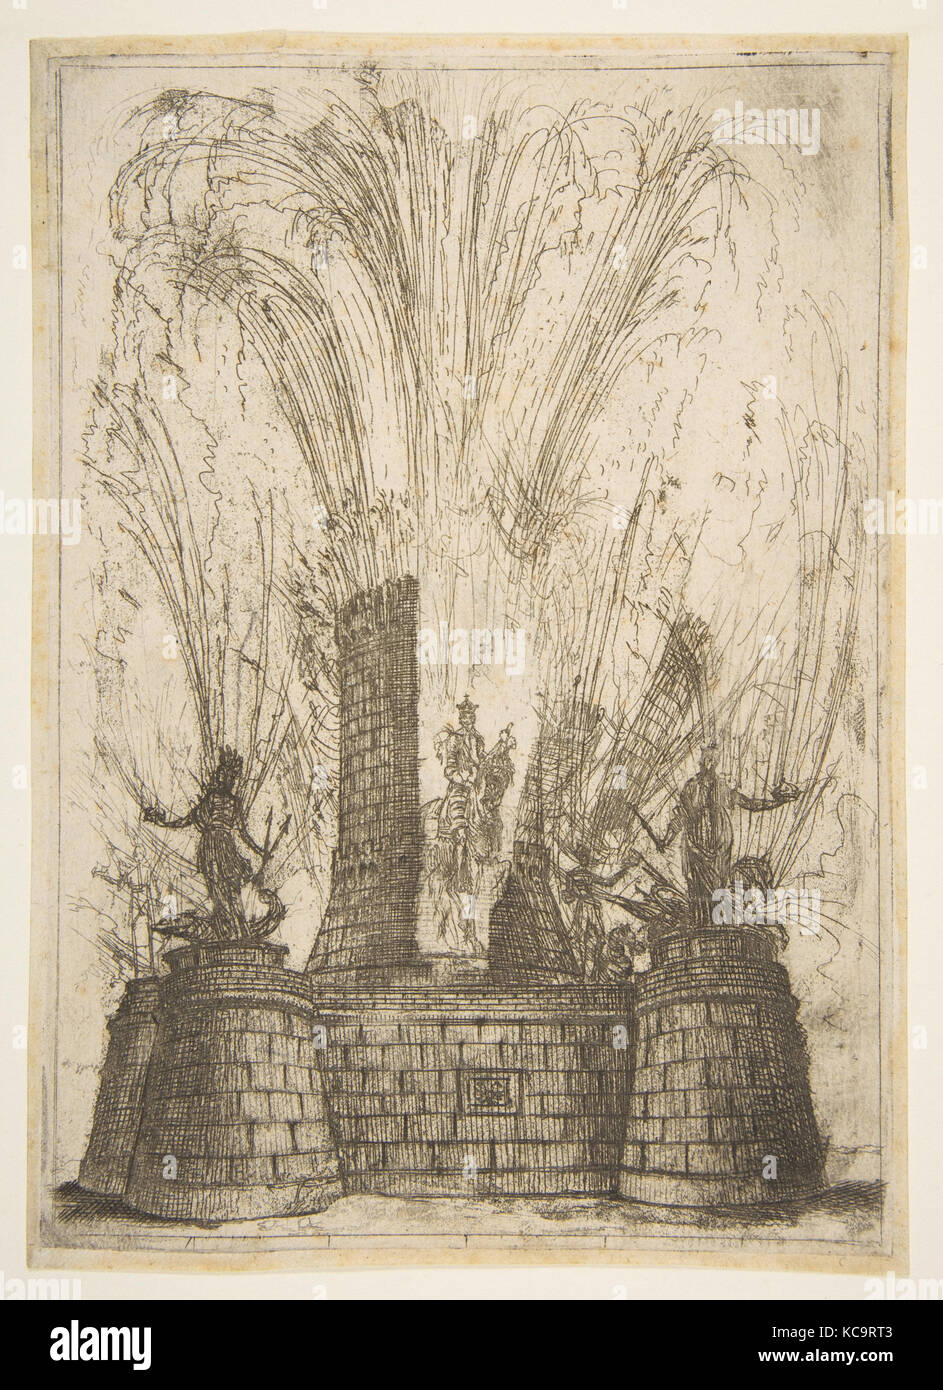 La torre redonda ruptura para revelar la estatua del rey de los romanos, Claude Lorrain, 1637 Foto de stock